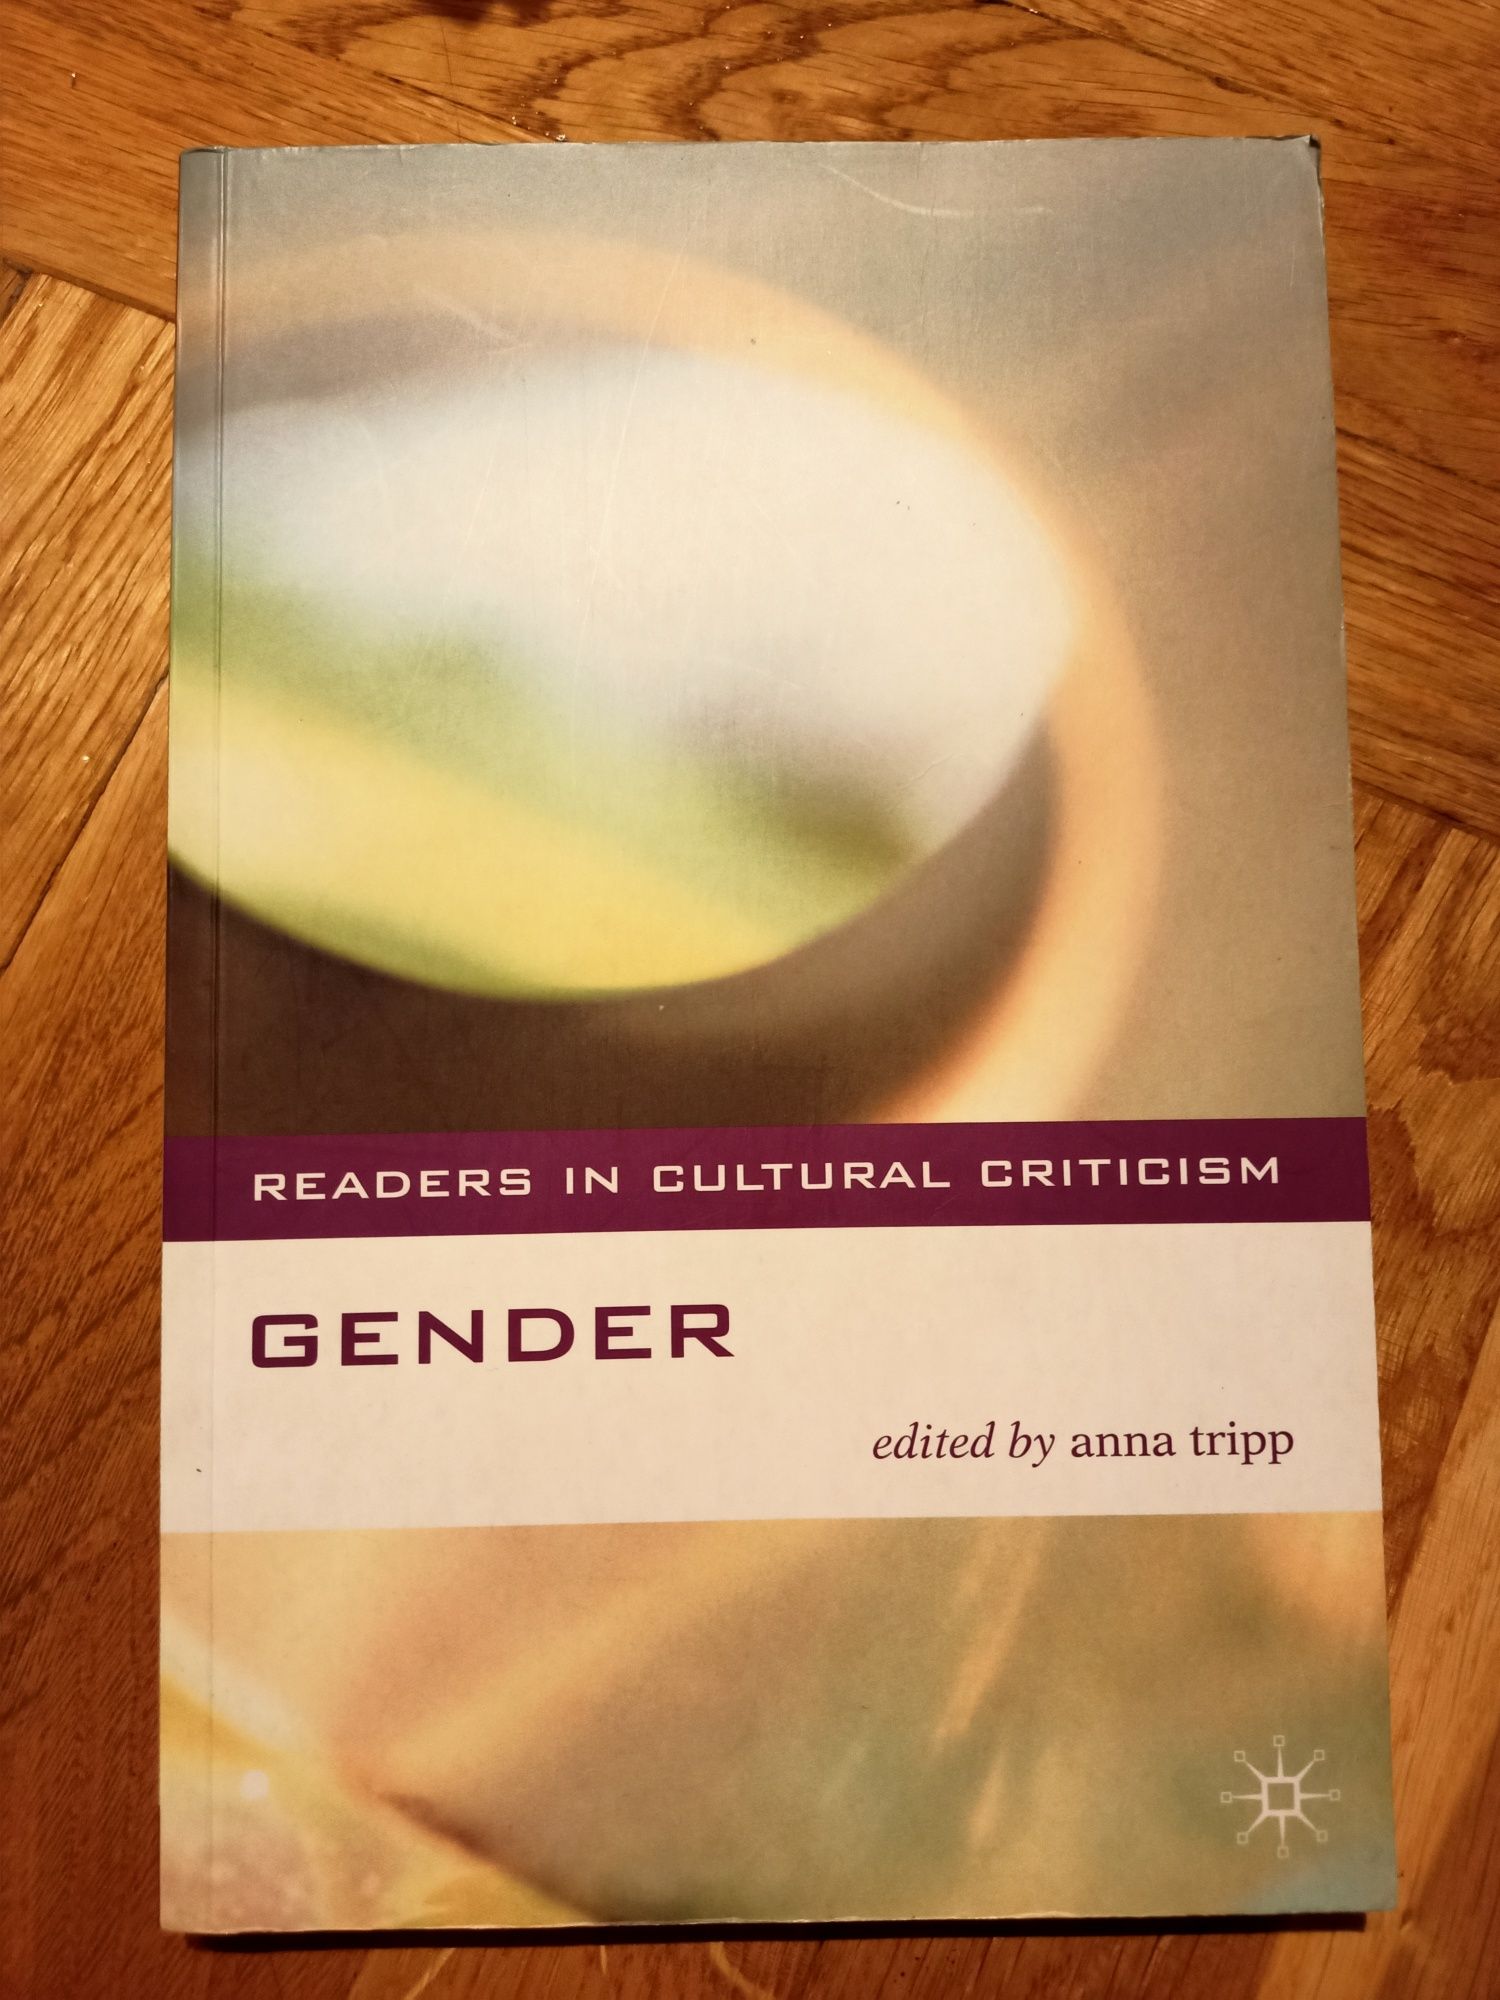 Gender edited by Anna Tripp